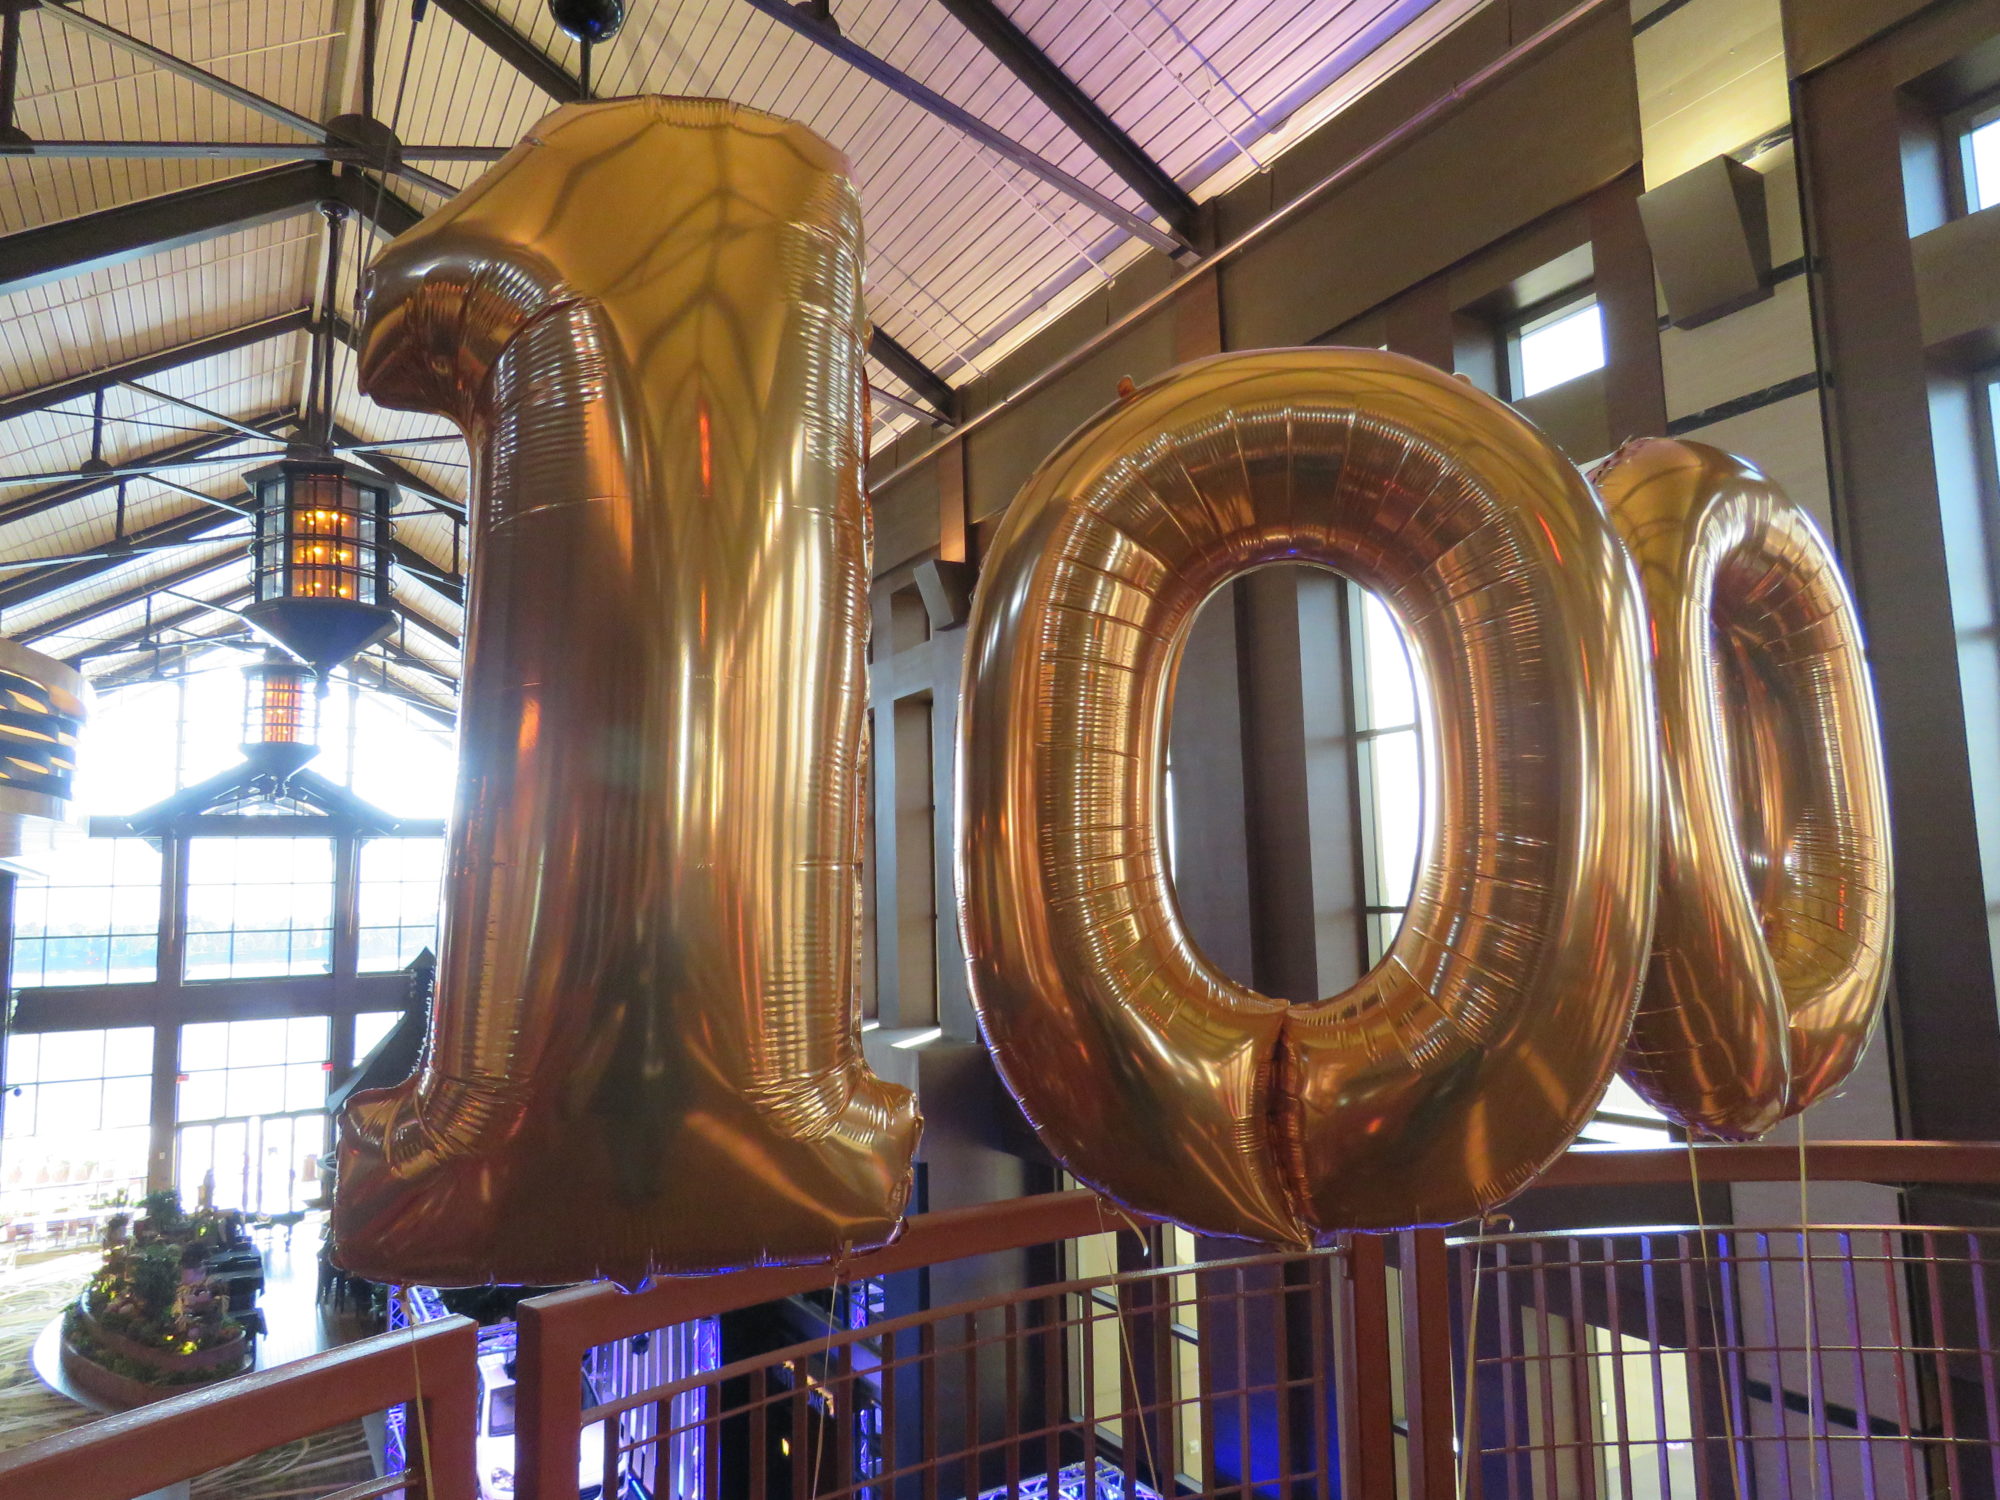 10 year anniversary of lsu 100